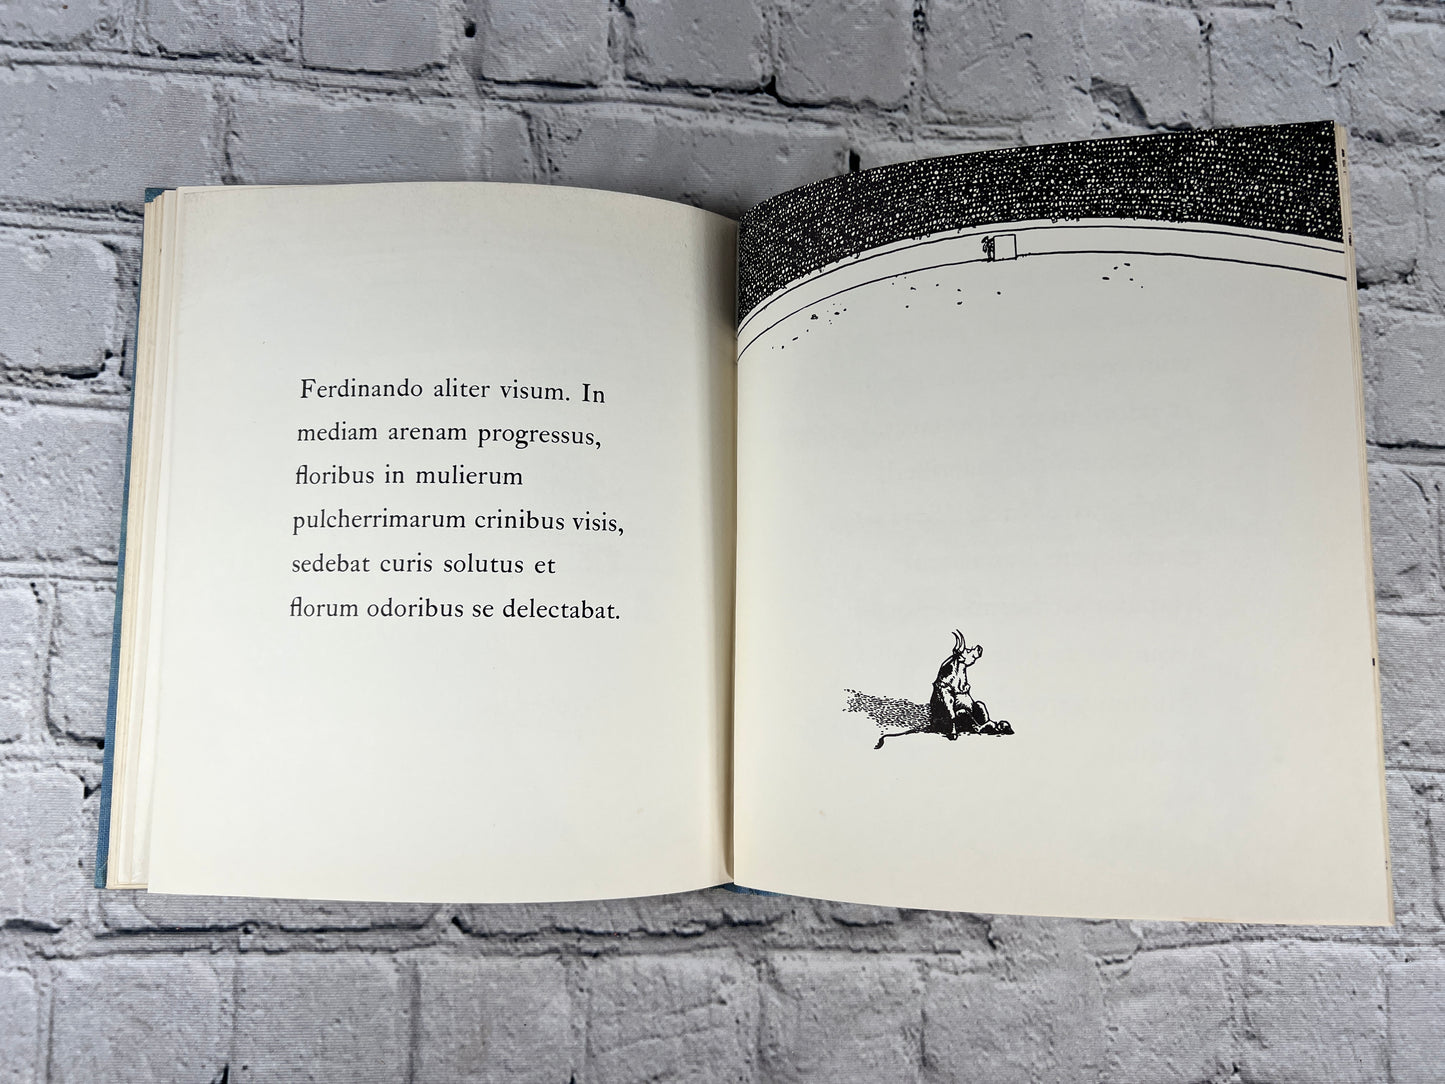 Ferdinandus Taurus The Story of Ferninand by Munro Leaf [1962 · Latin Language]